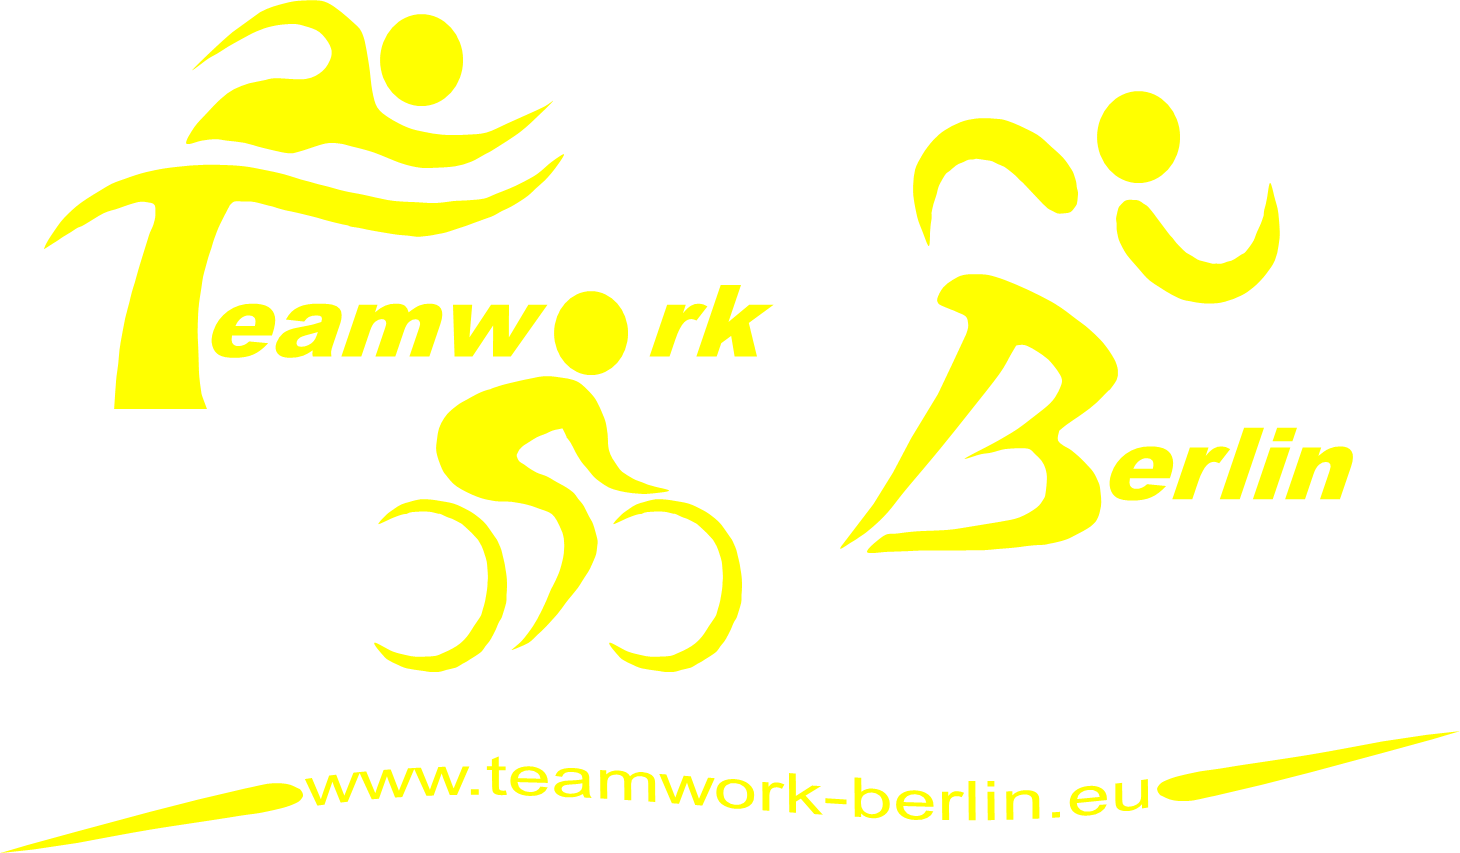 Teamwork Berlin